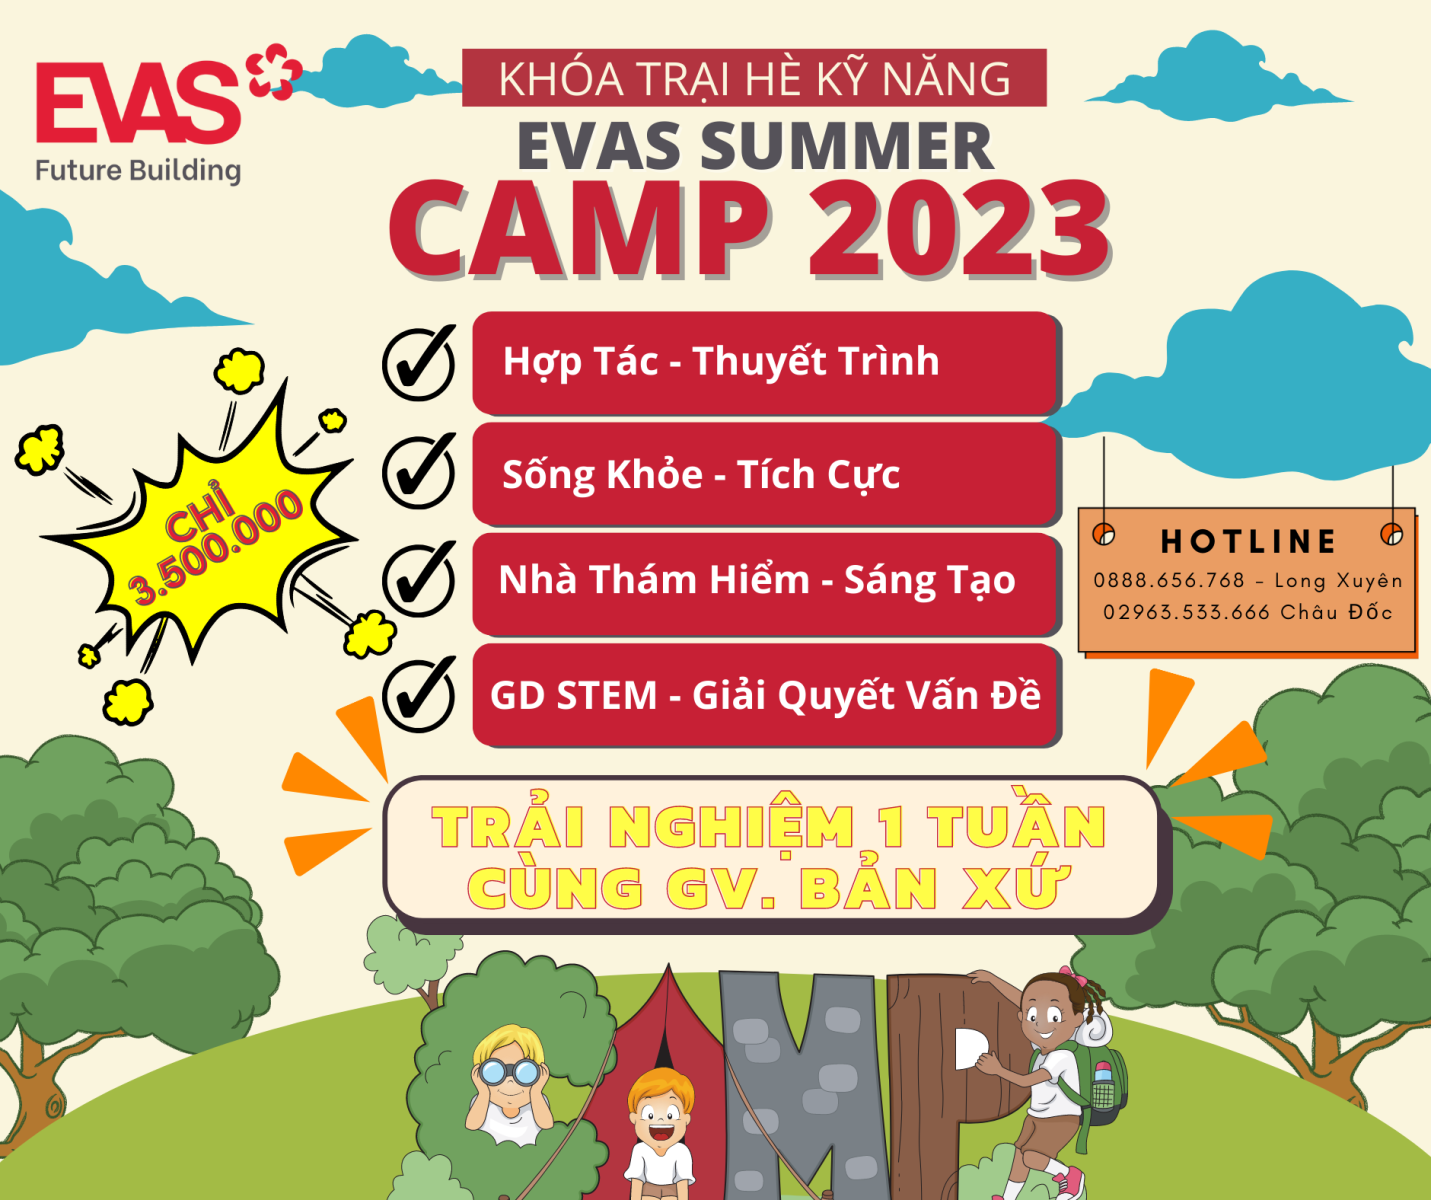 Tuyển sinh Khóa Trại hè kỹ năng 2023 - EVAS Summer Camp 